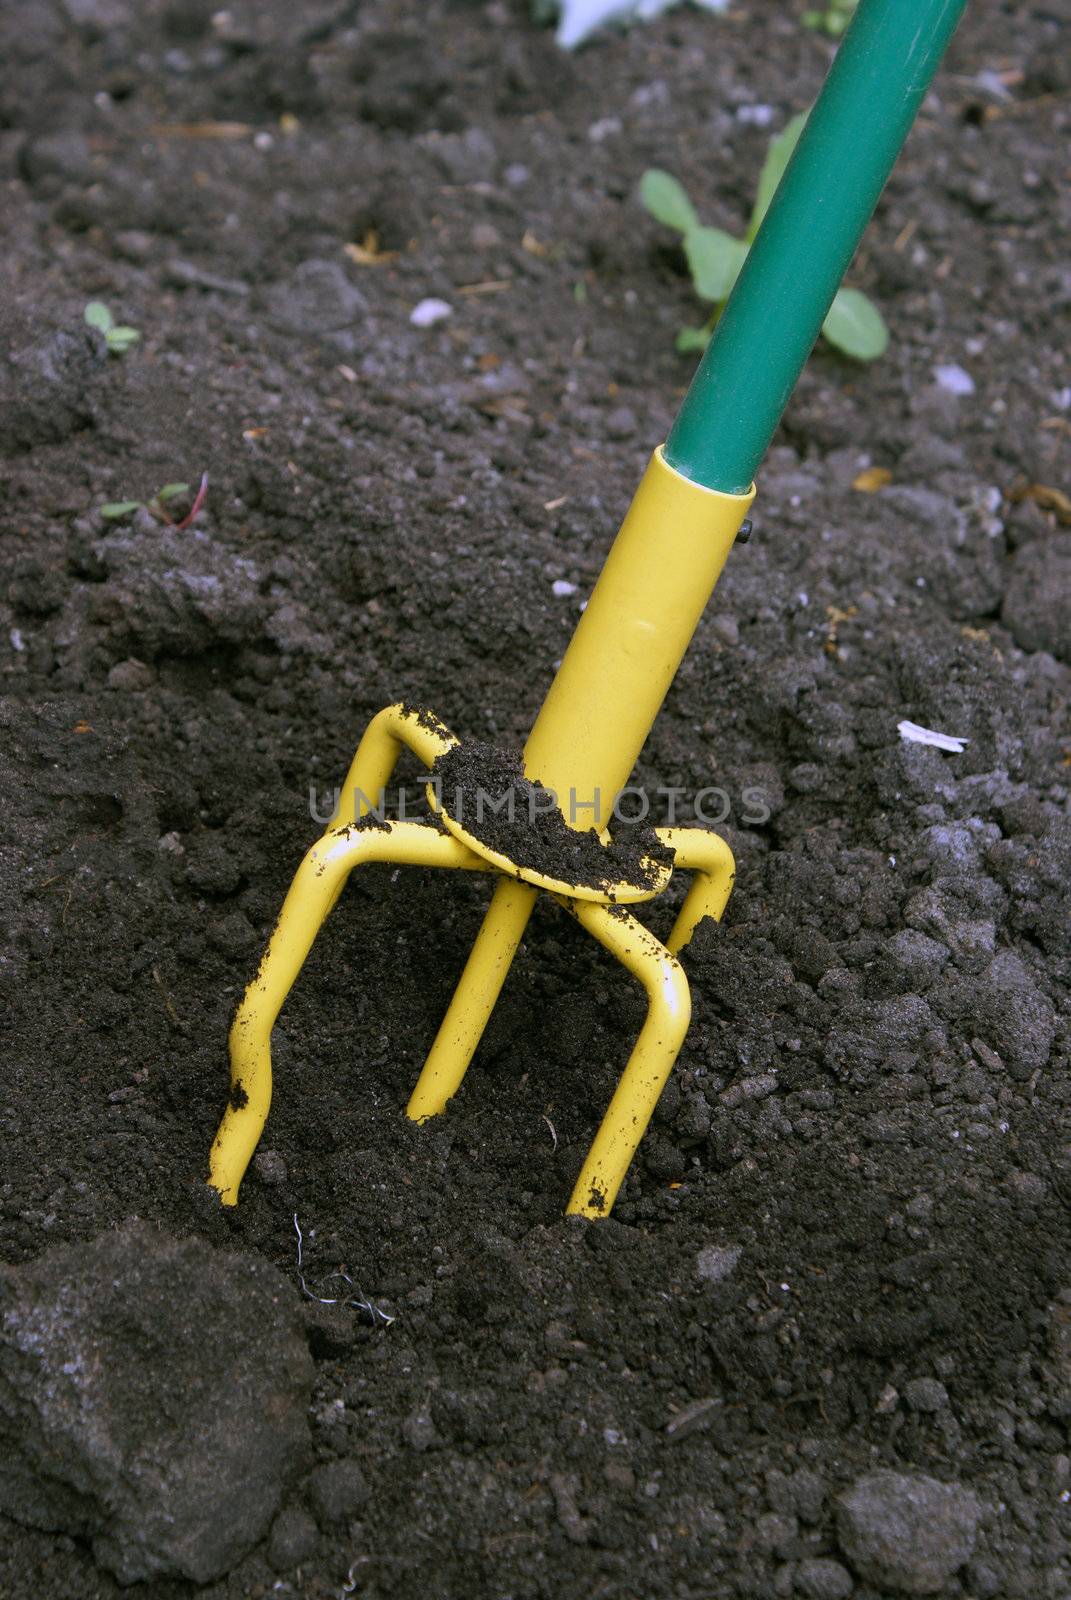 A closeup shot of a hand tiller working the dirt around.